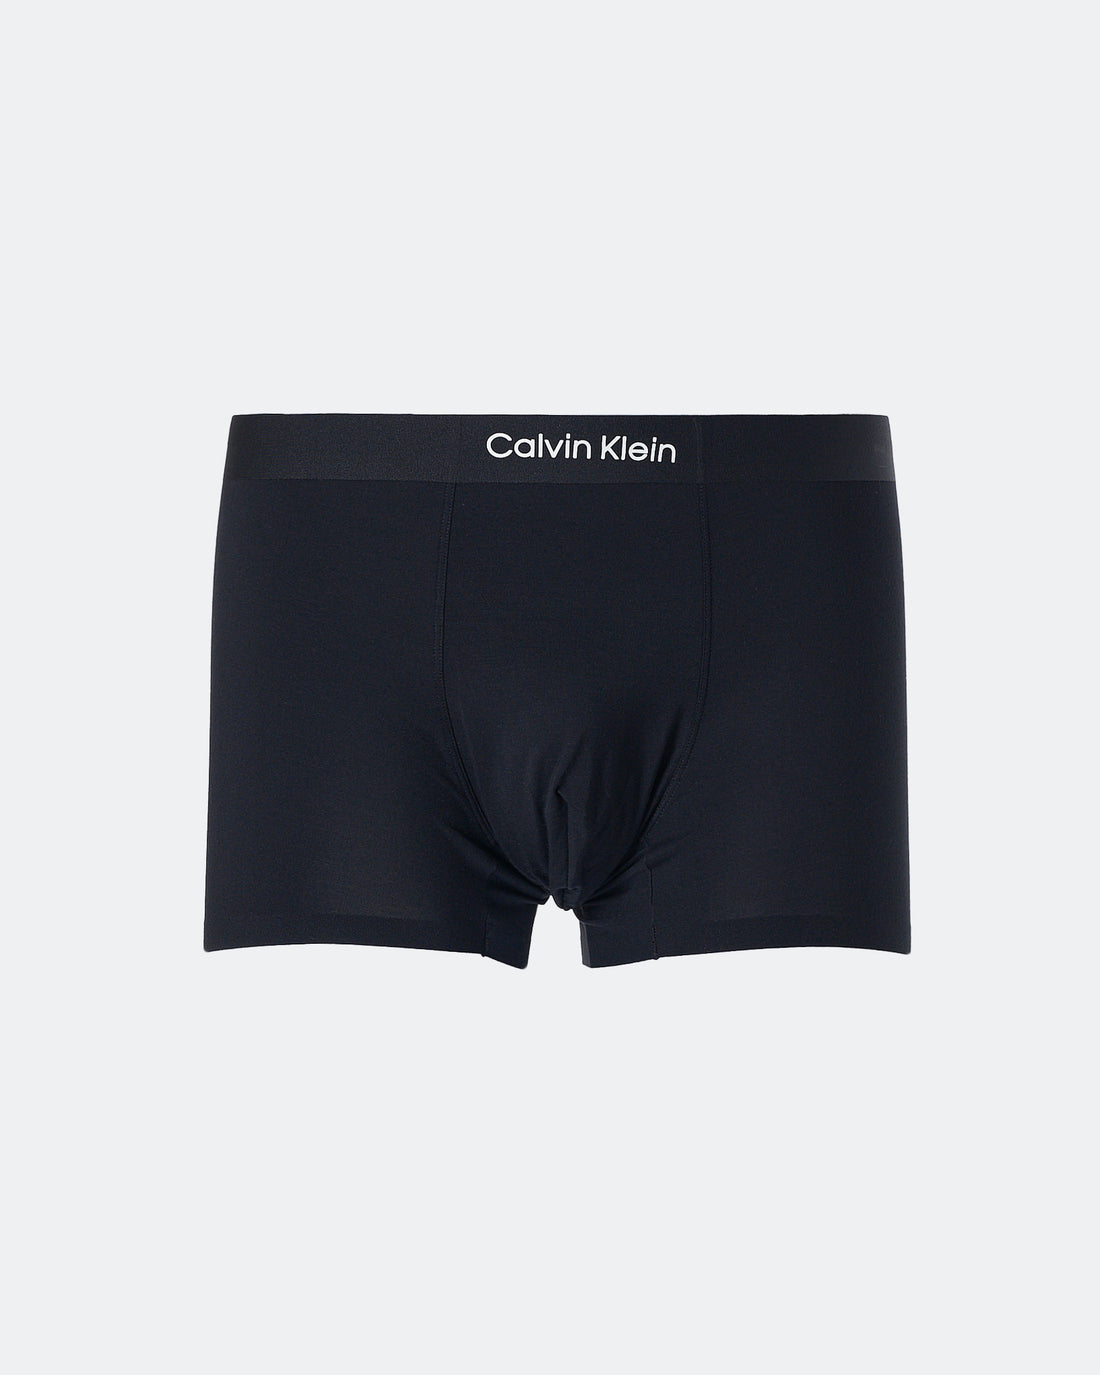 CK Plain Color Men Black Underwear 6.90